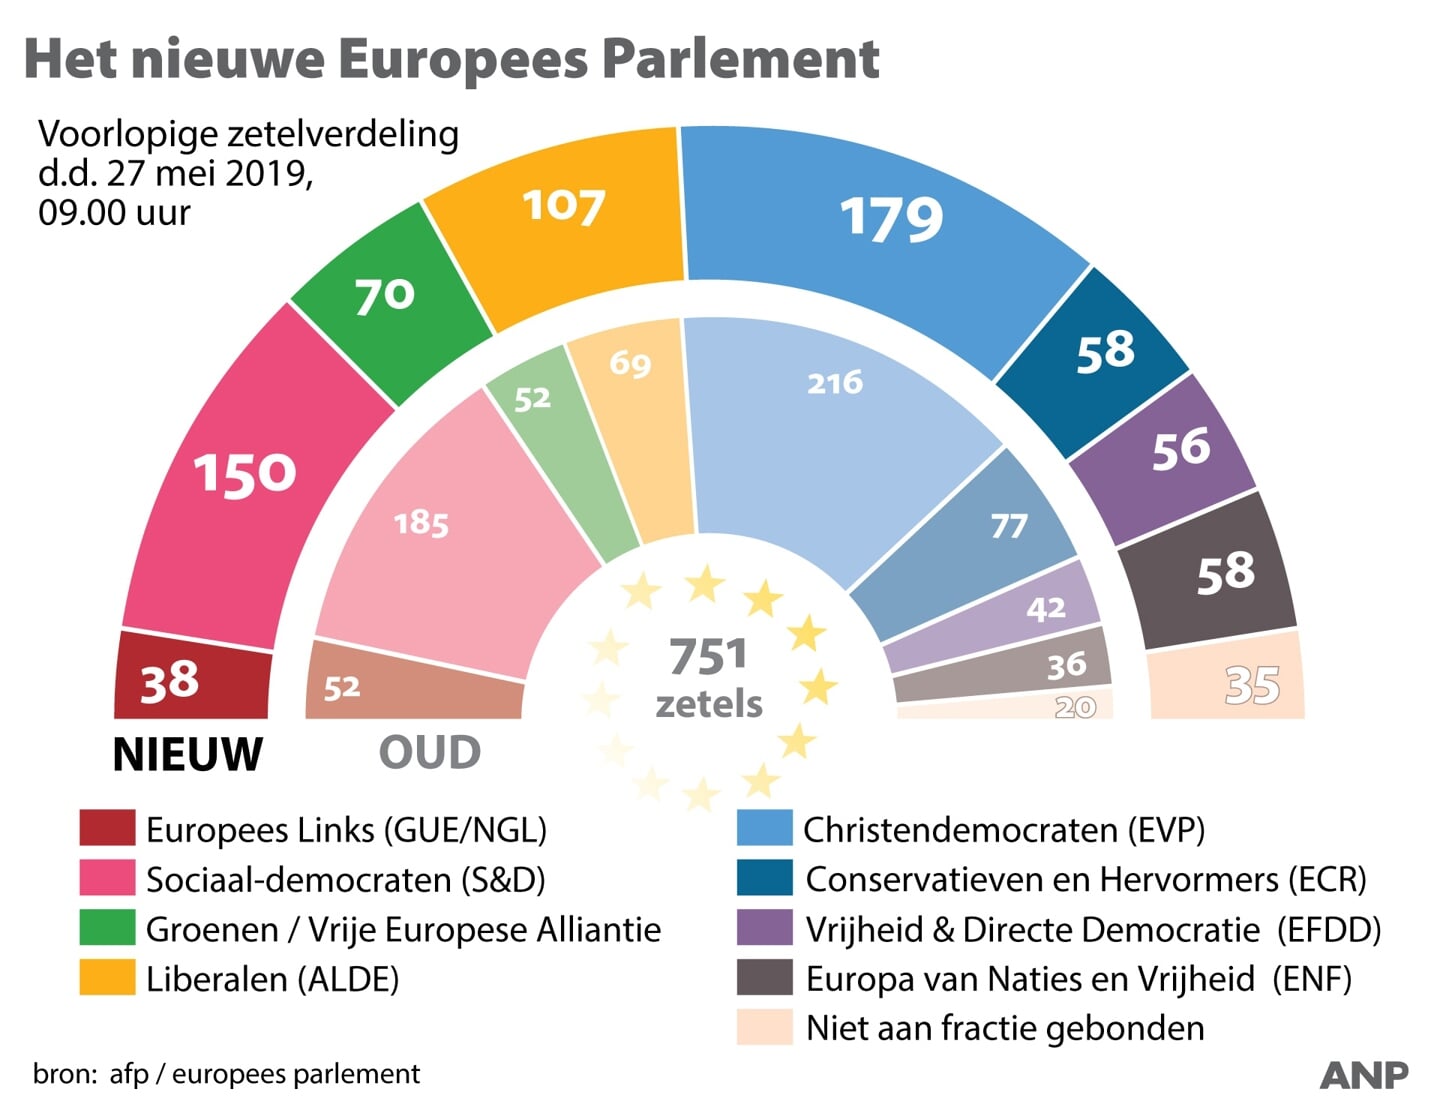 Bij de laatste Europese verkiezingen, in 2019, werd de christendemocratische EVP de grootste fractie. Hierbij zijn onder meer het CDA en de ChristenUnie aangesloten.